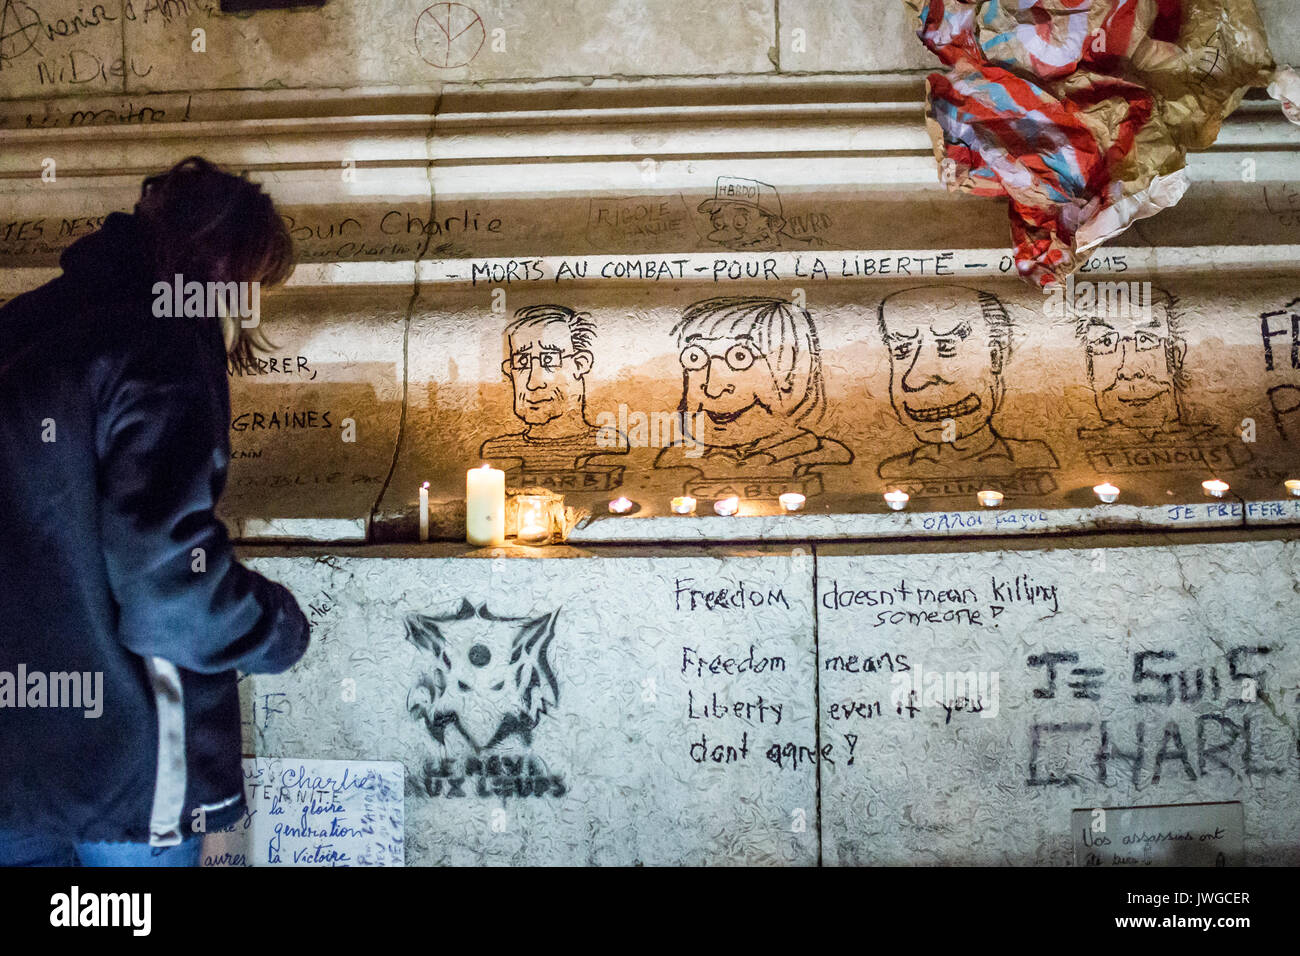 4 Portraits Zeichnungen von cabu charb, tignous wolinski. Hommage an die Opfer von Charlie Hebdo Tötung in Paris der 7. Januar 2015. Stockfoto